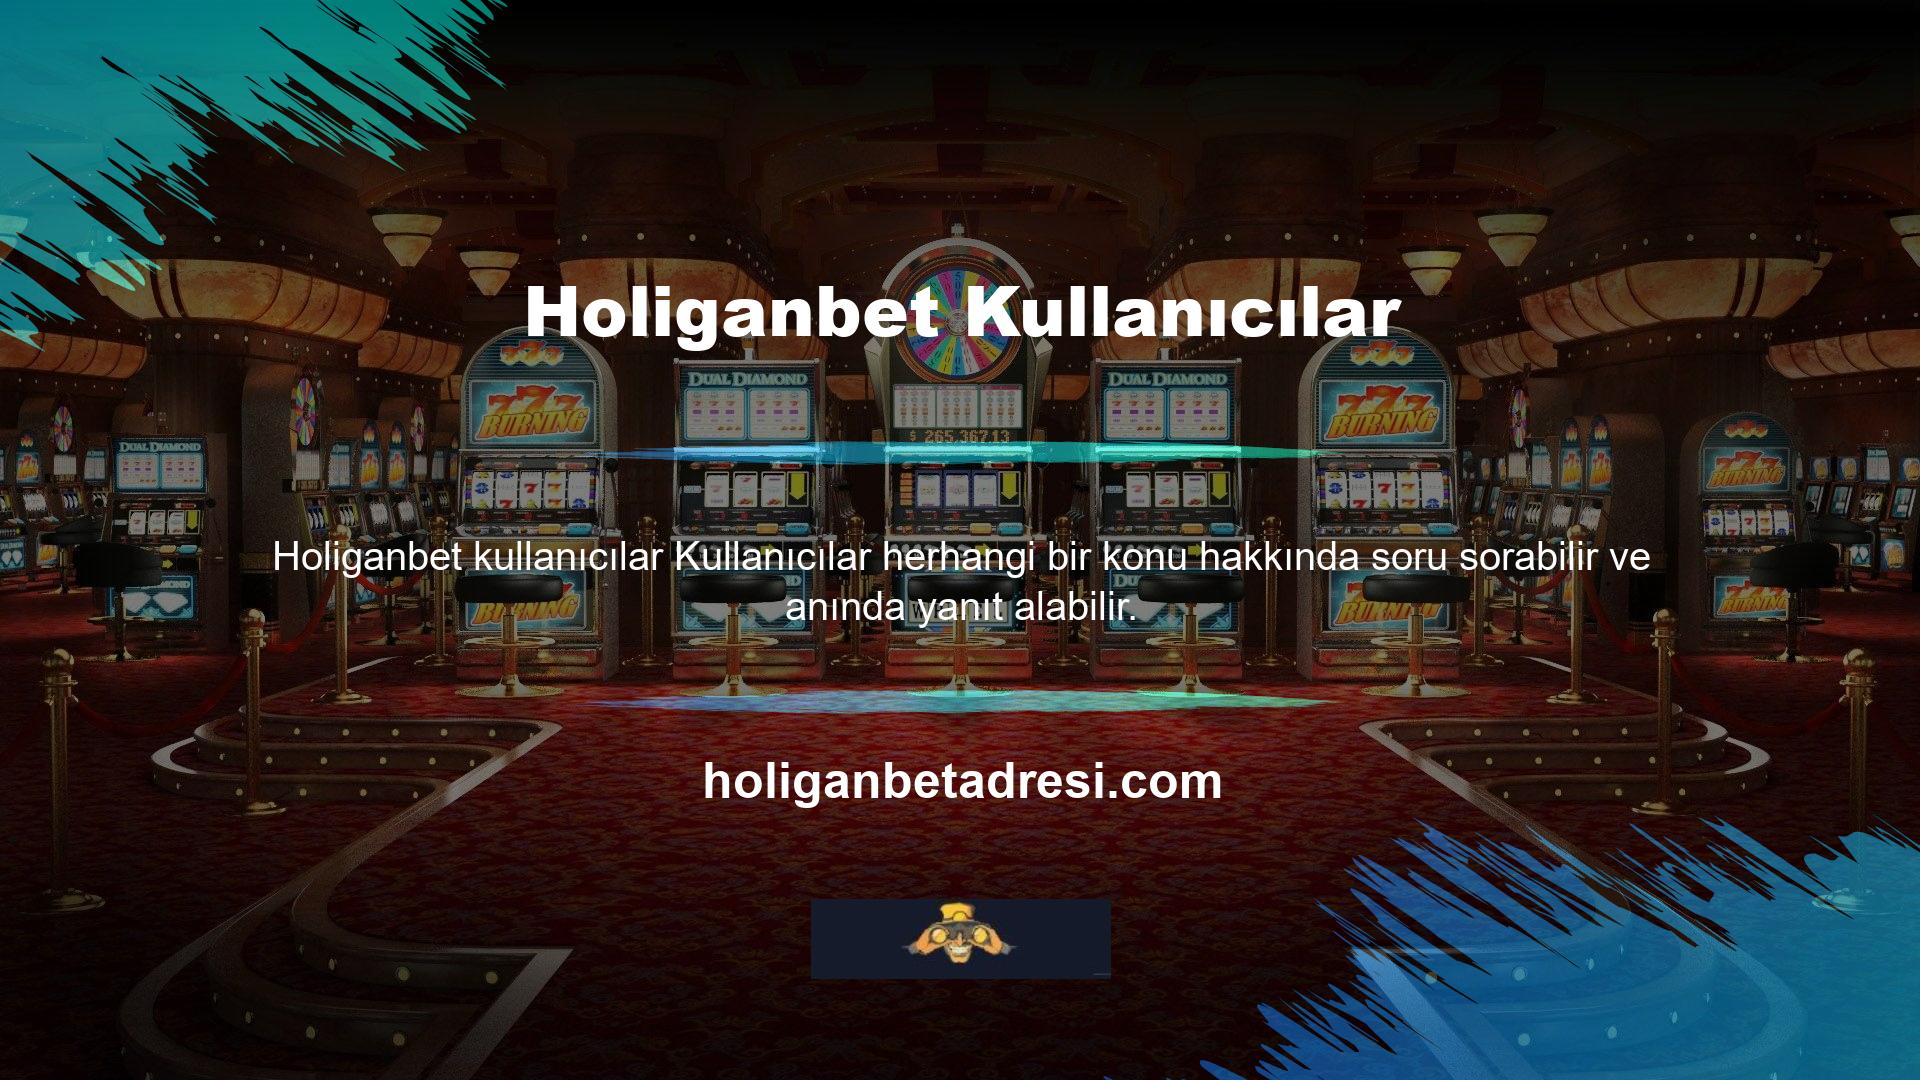 Ayrıca Holiganbet canlı destek ekibi, kullanıcılara yardımcı olmaya ve siteyi anlamalarına yardımcı olmaya her zaman hazırdır